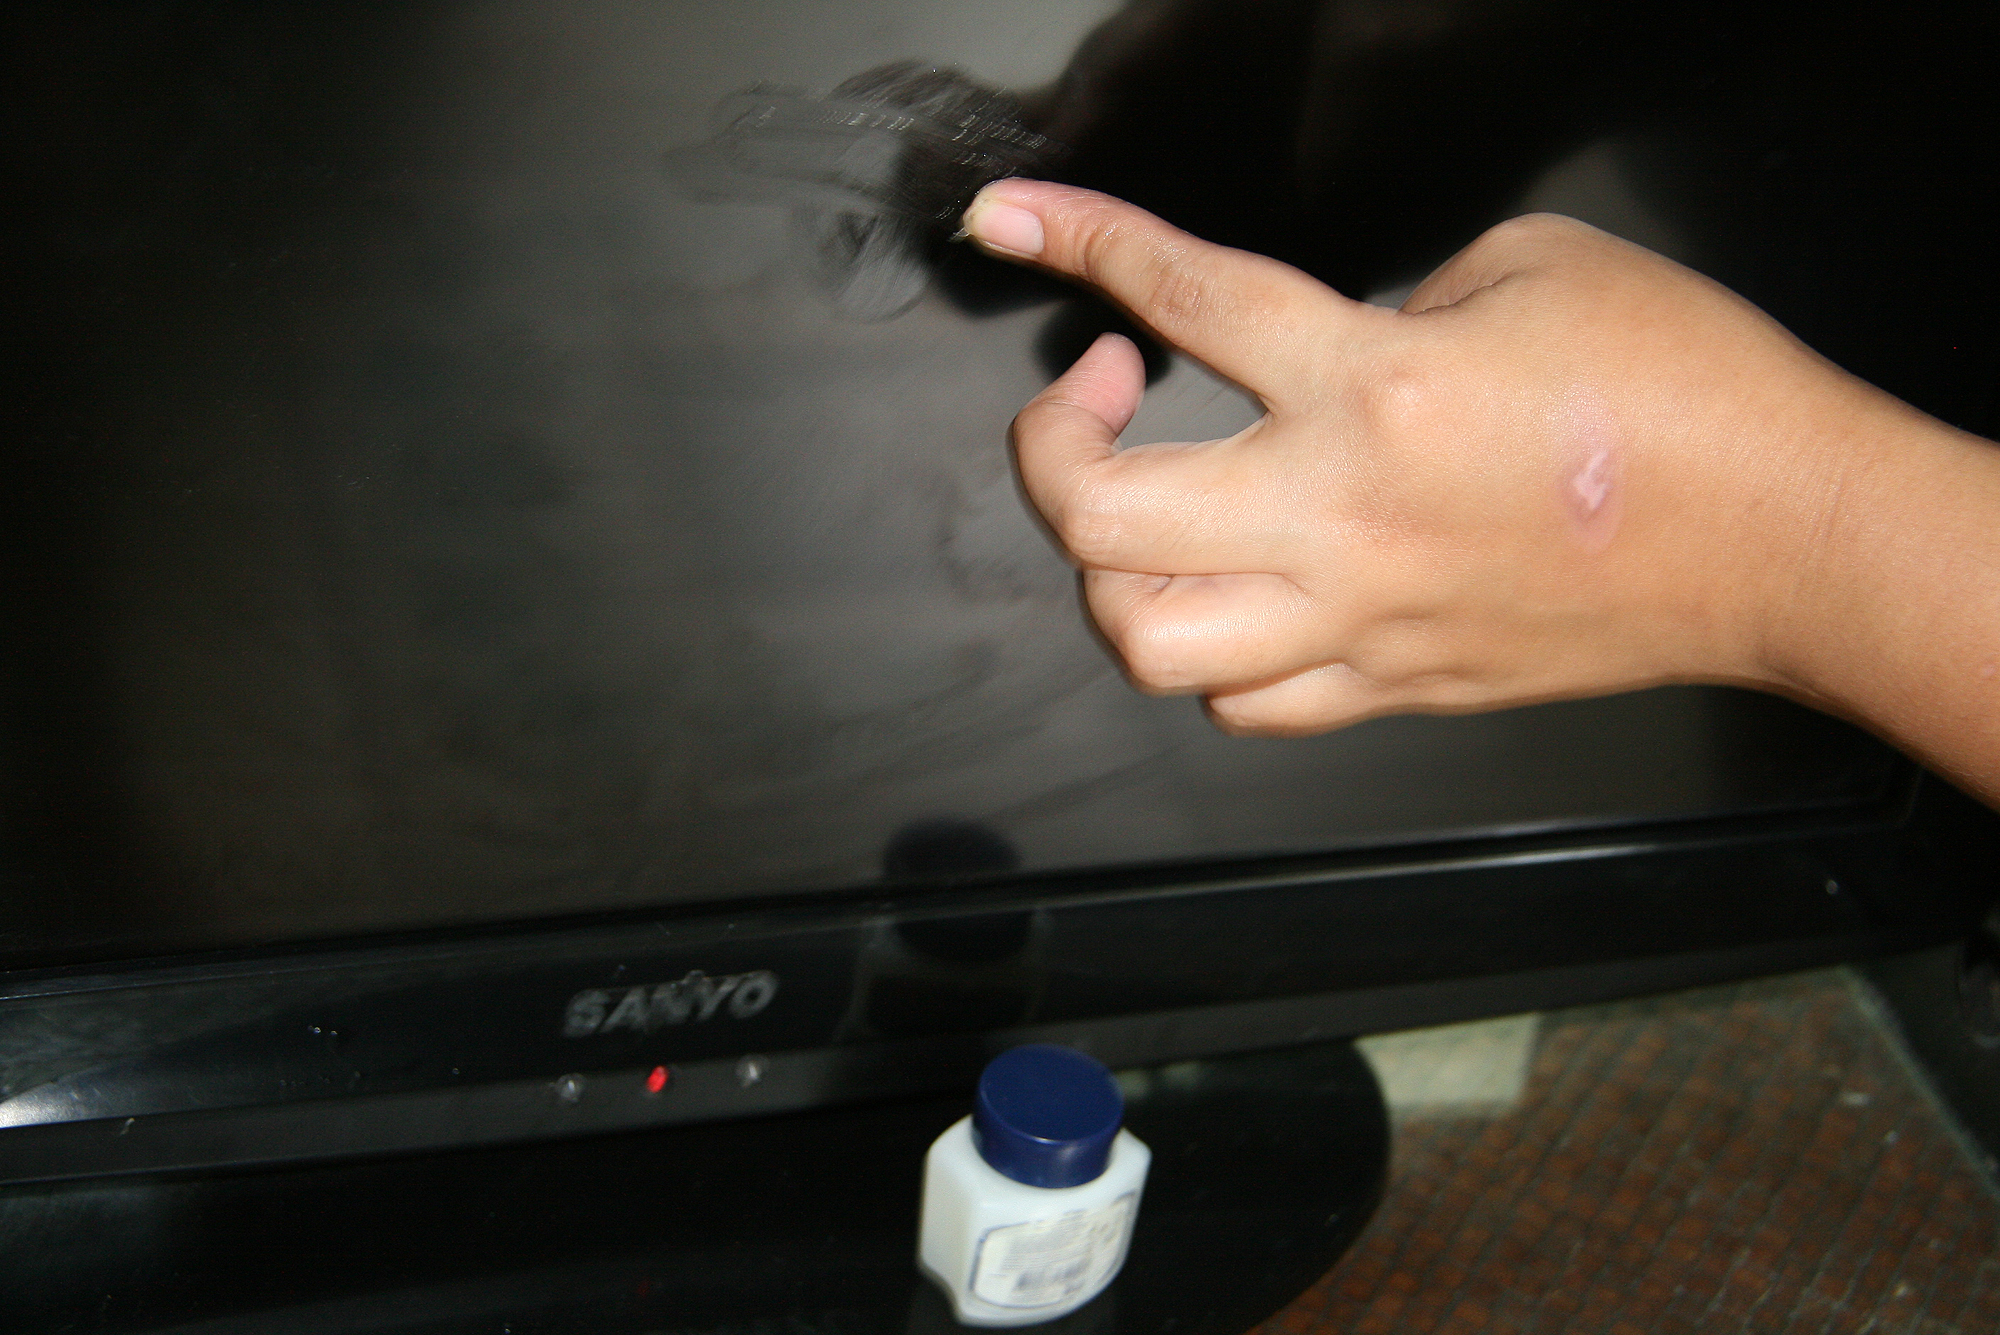 Чем протереть экран телевизора плазма в домашних